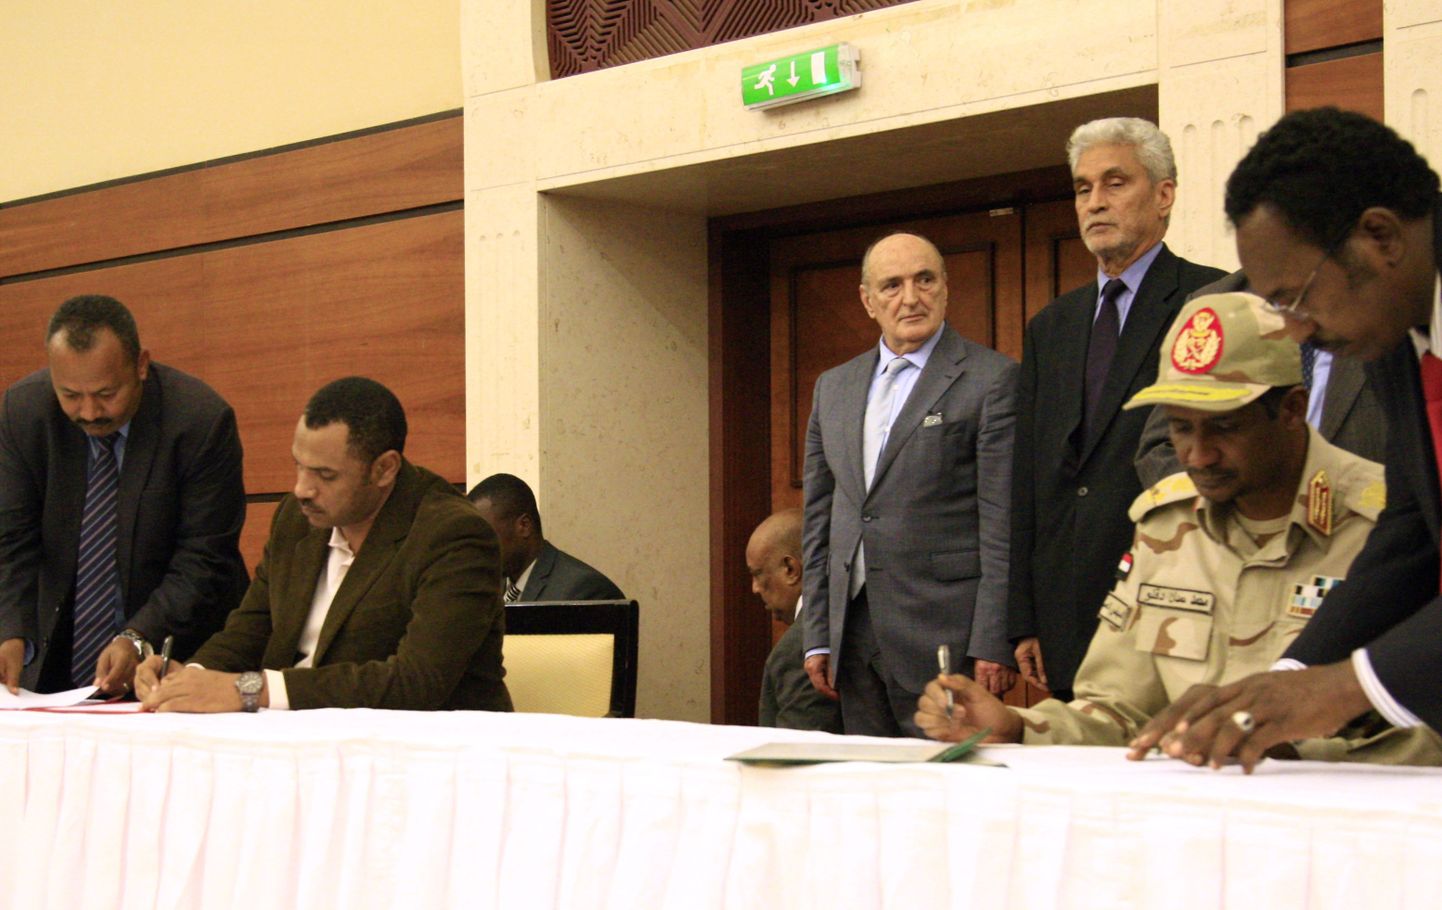 Sudaani sõjanõukogu asejuht Mohamed Hamdan Dagalo ja protestiliikumise liider Ahmad al-Rabiah allkirjastasid võimujagamisleppe.